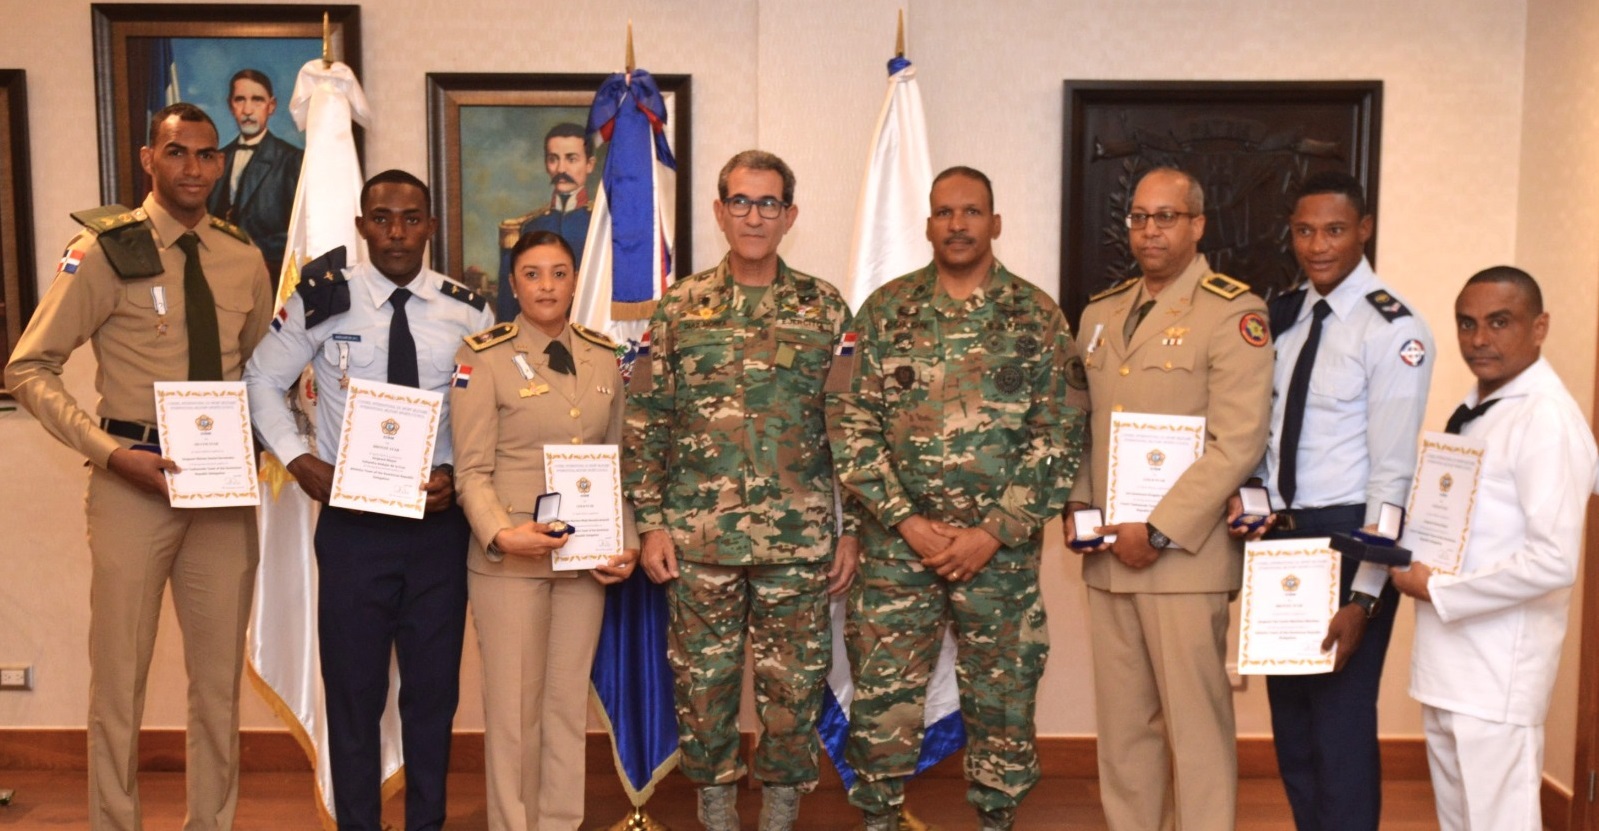 Fuerzas Armadas reconocen militares con “Medalla al mérito” por logros en  evento deportivo internacional - Ministerio de Defensa de República  Dominicana